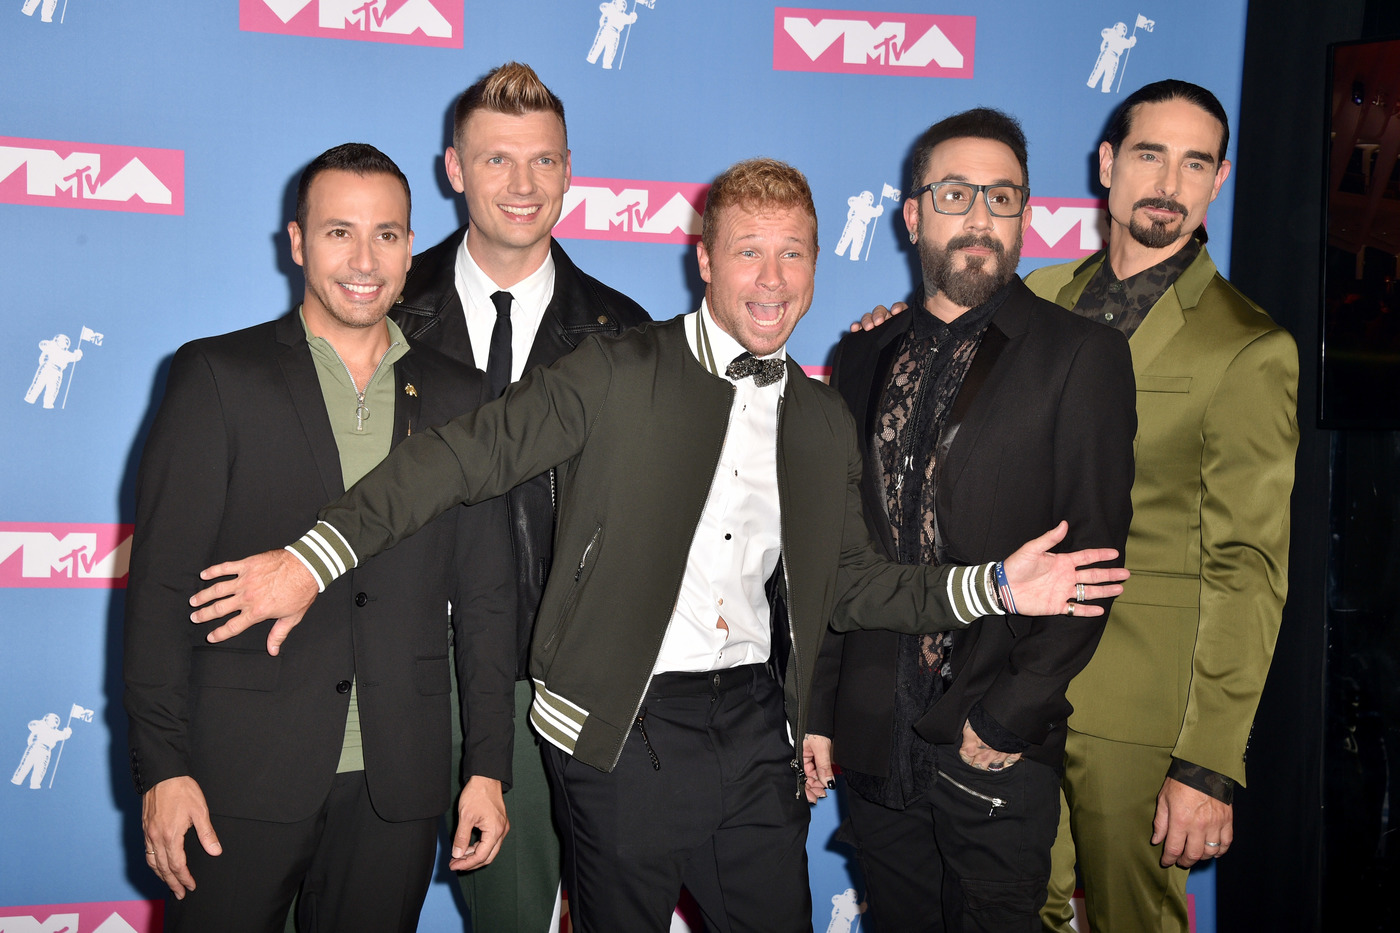 Backstreet Boys y N’Sync protagonizan nuevo documental